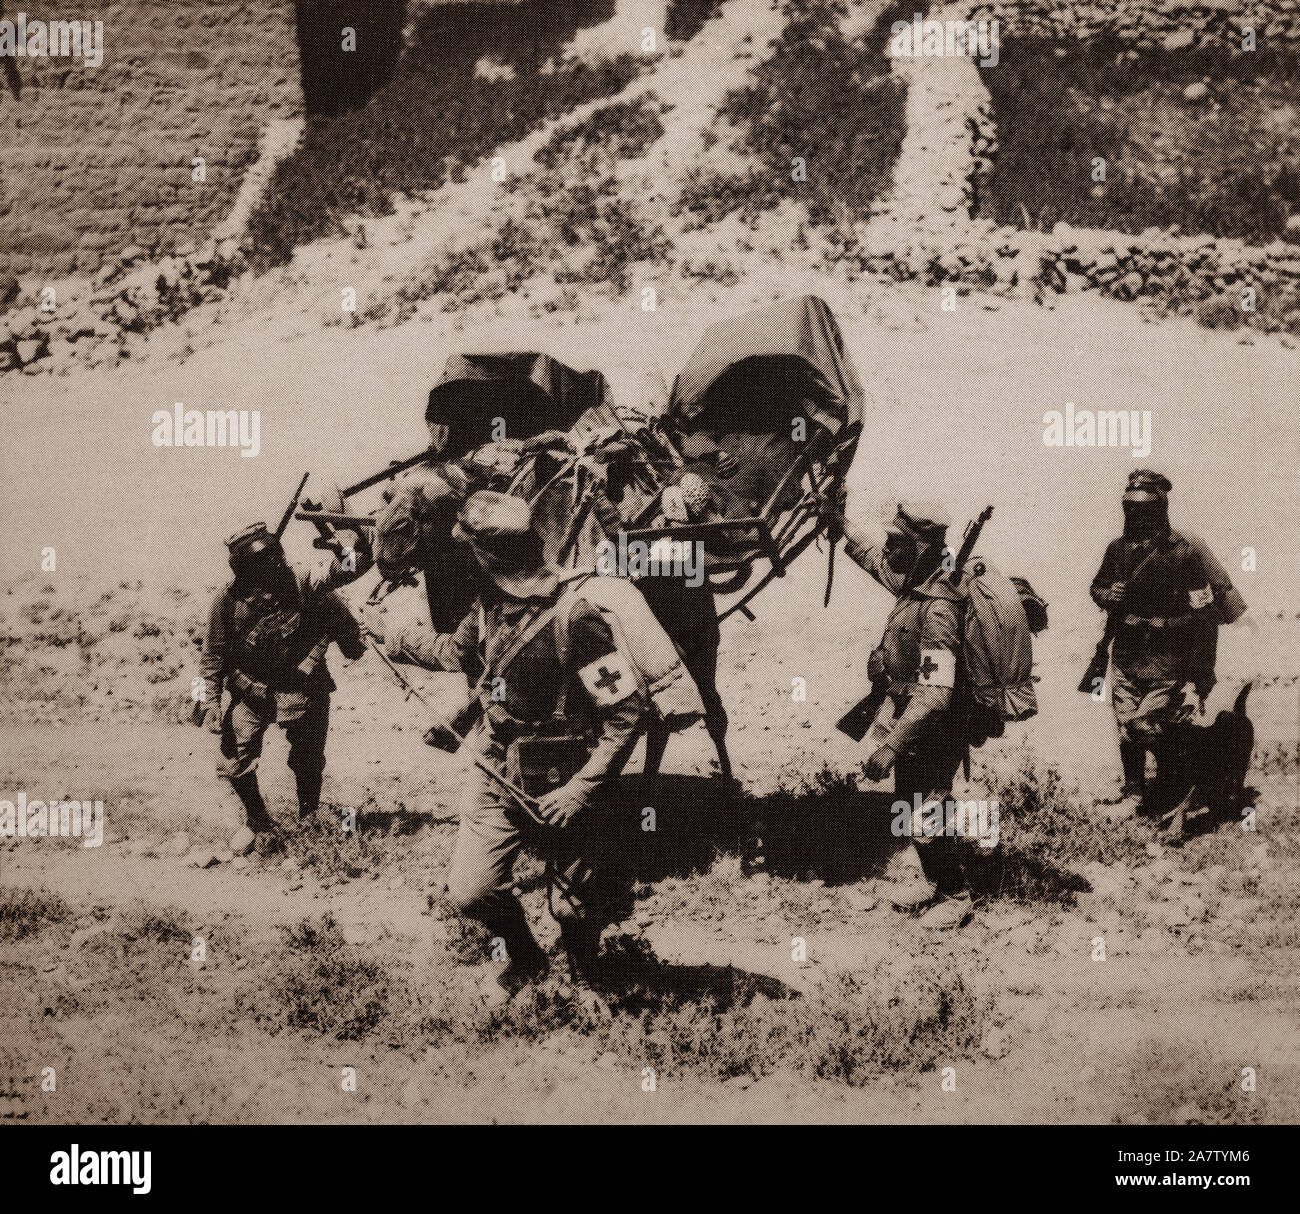 Das Rote Kreuz, die verwundeten Soldaten während des Sinai und Palästina Kampagne des Nahen Ostens Theater des Ersten Weltkriegs von der Arabischen Revolte und das Britische Empire, gegen das Osmanische Reich und seinem Kaiserlichen verbündeten gekämpft wurde. Es begann mit einem Osmanischen Versuch, den Suezkanal überfallen in 1915 und endete mit dem Waffenstillstand von Mudros im Jahre 1918, was auf die Abtretung der osmanischen Syrien. Stockfoto